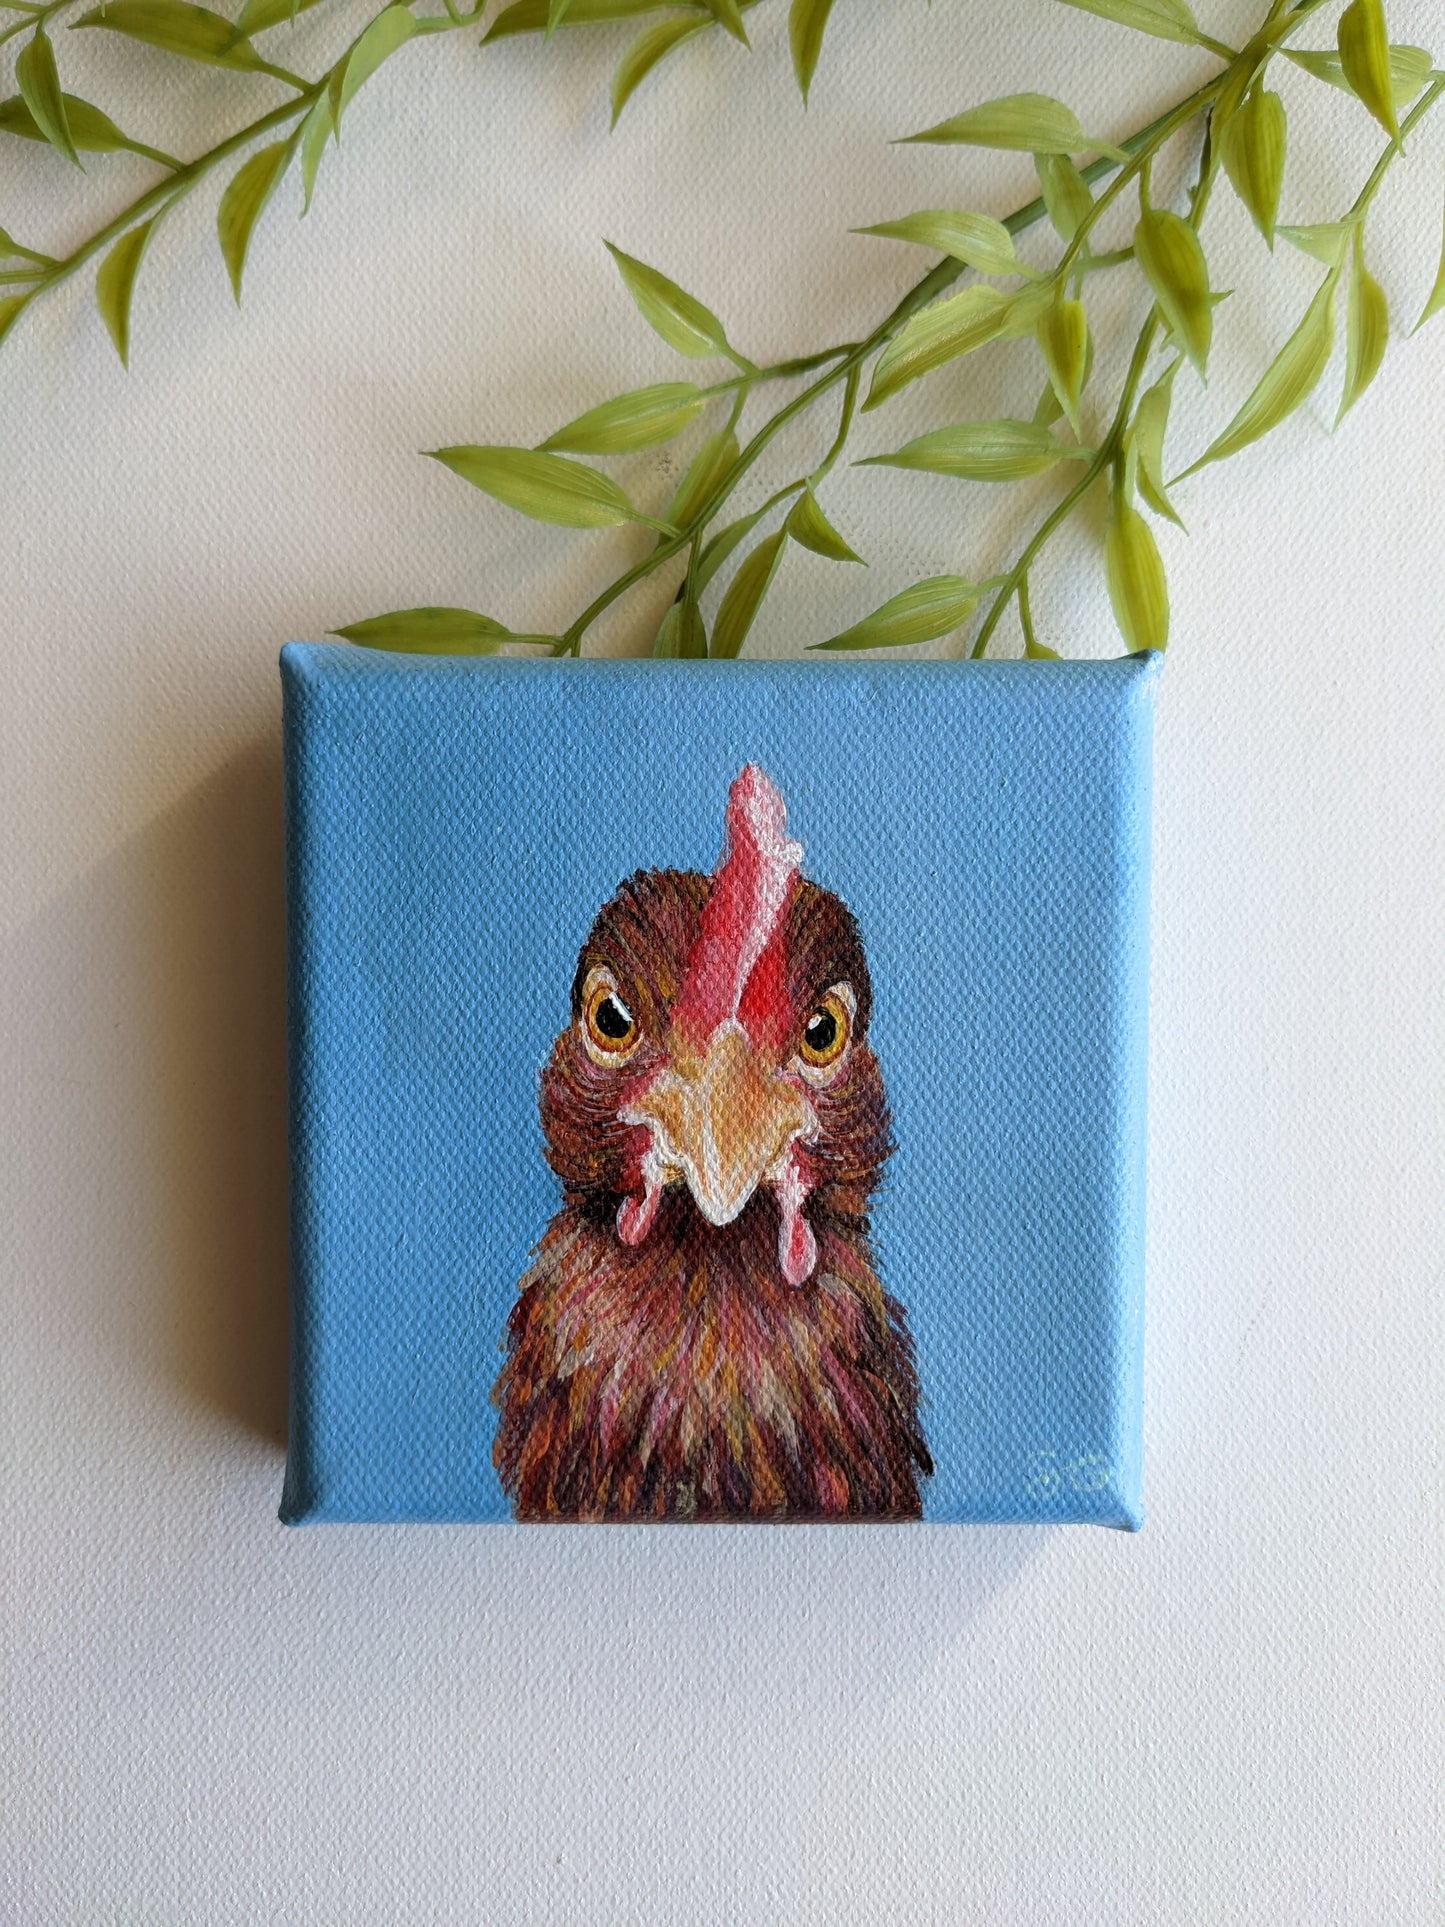 Chicken original painting | 4X4 inch